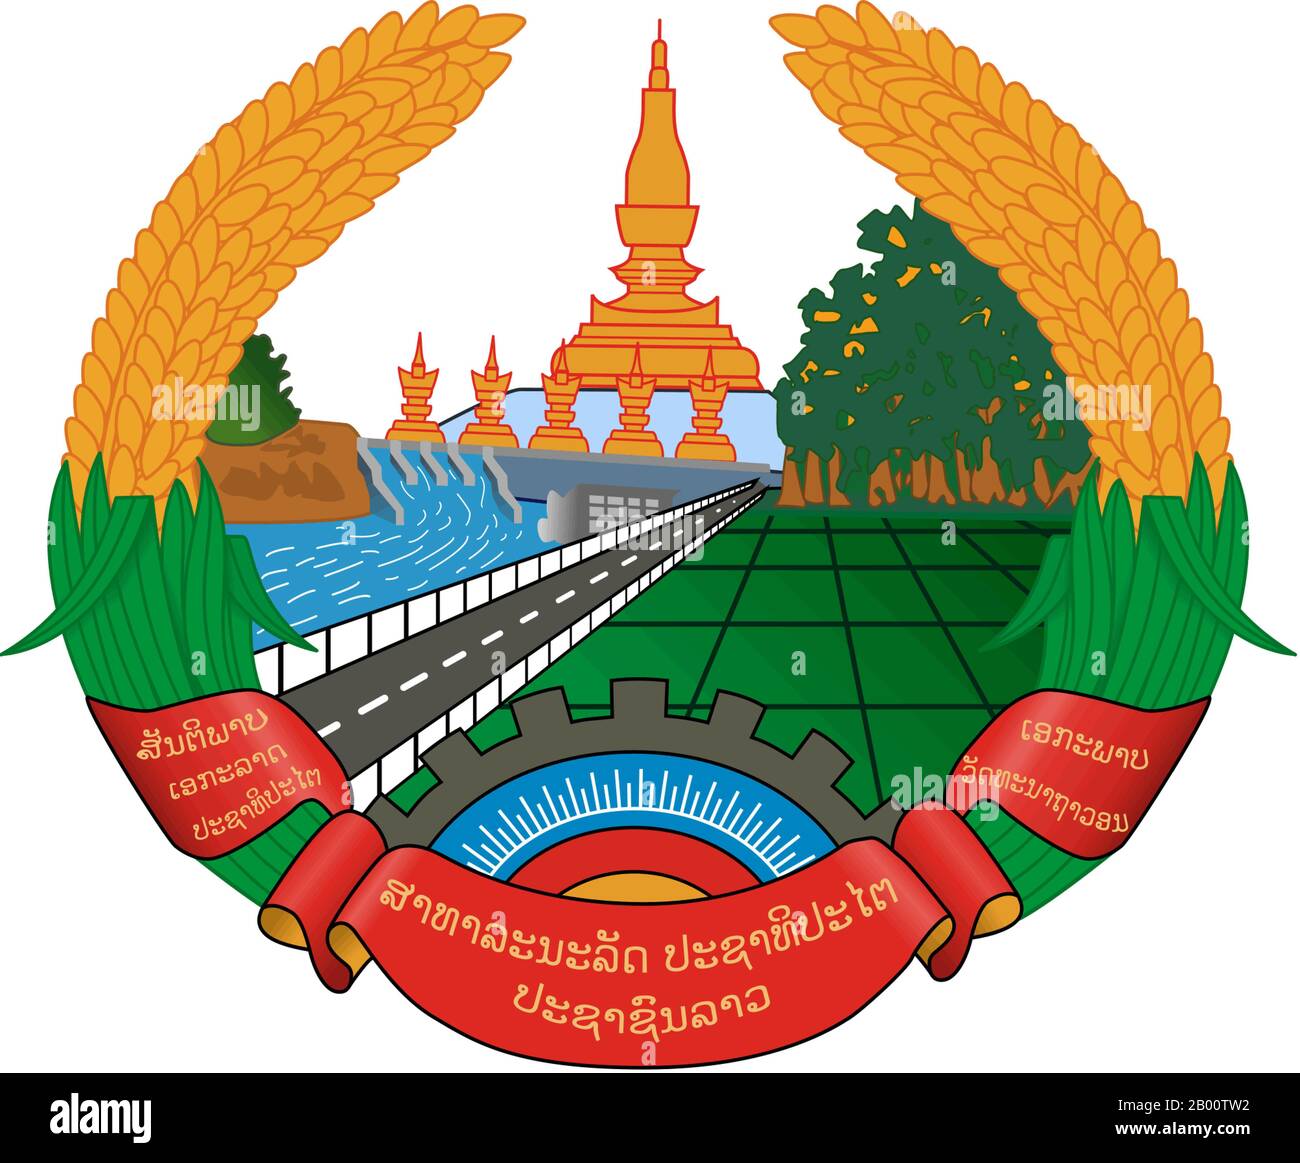 Laos: Stemma della Repubblica Democratica popolare del Laos. Il regno del Laos esisteva dal XIV al XVIII secolo, poi si divise in tre regni separati. Nel 1893 divenne un protettorato francese, con i tre regni, Luang Prabang, Vientiane e Champasak, che si univano per formare quello che ora è conosciuto come Laos. Il paese ottenne per breve tempo l'indipendenza nel 1945 dopo l'occupazione giapponese, ma tornò al dominio francese fino a quando non gli fu concessa l'autonomia nel 1949. Il Laos divenne indipendente nel 1954, con una monarchia costituzionale sotto il re Sisavang Vong; presto però scoppiò una lunga guerra civile. Foto Stock